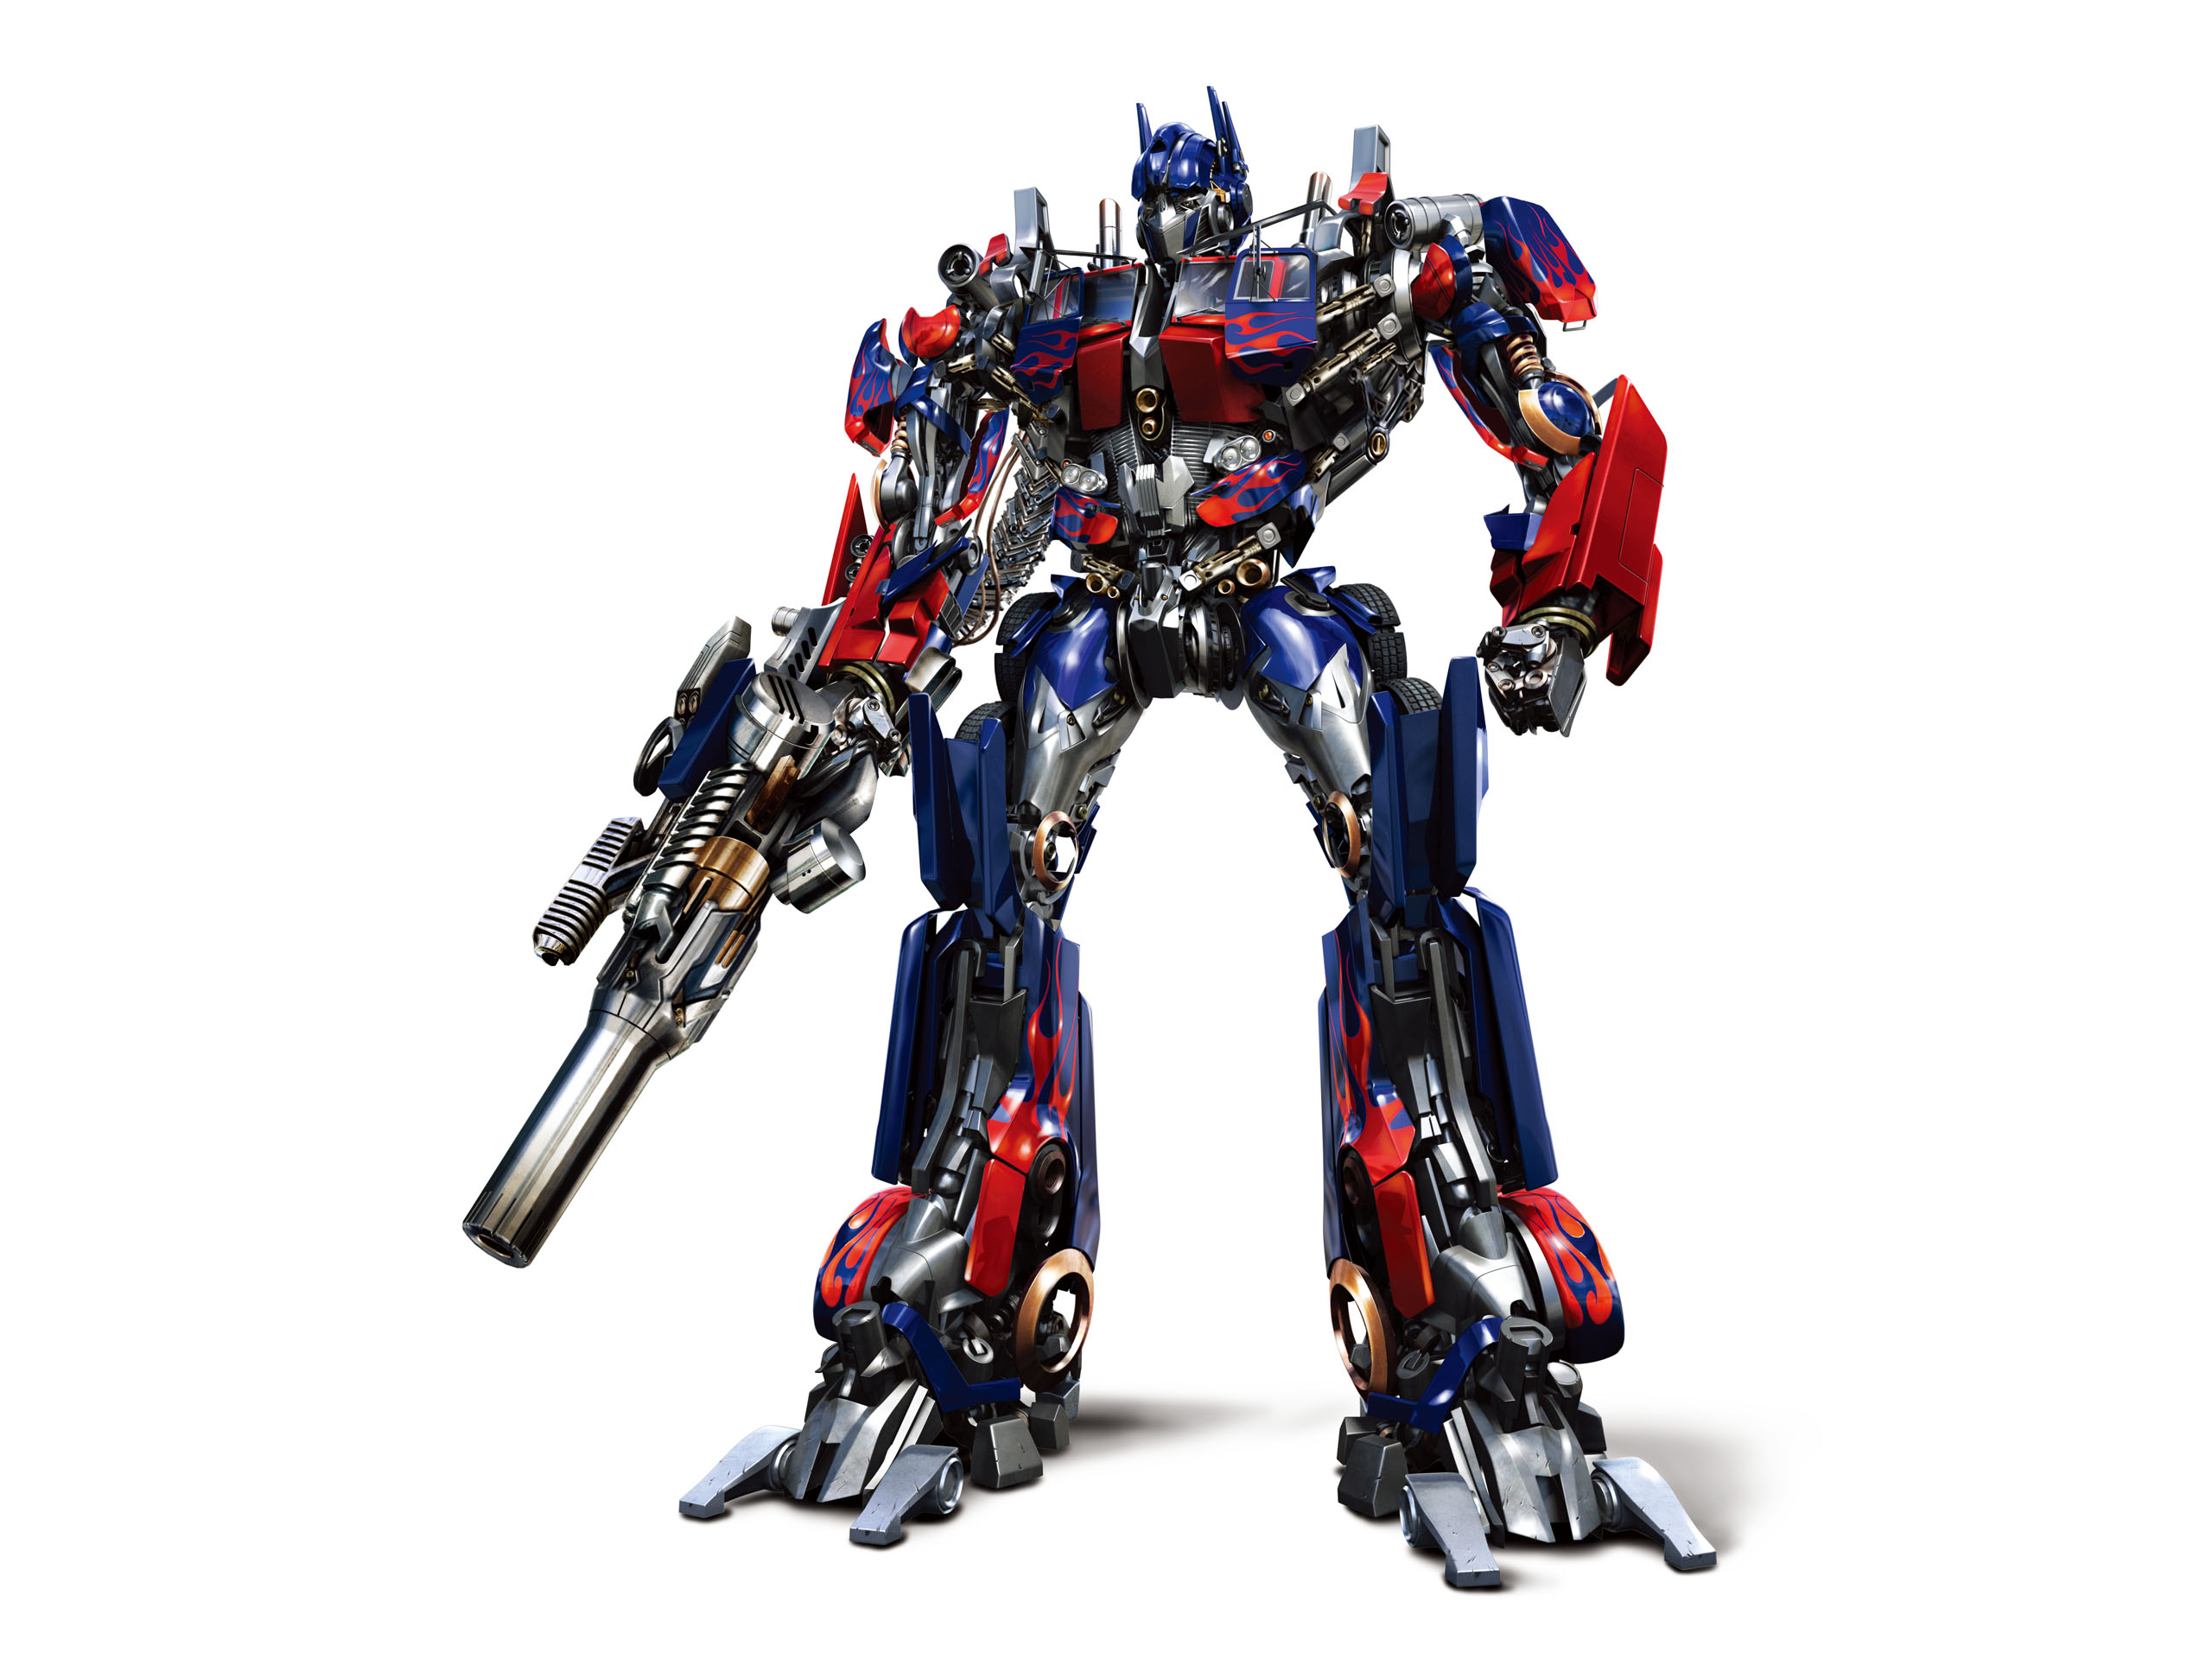 Mengenal Lebih Dekat Optimus Prime Pemimpin Autobot Just Ordinary Blog